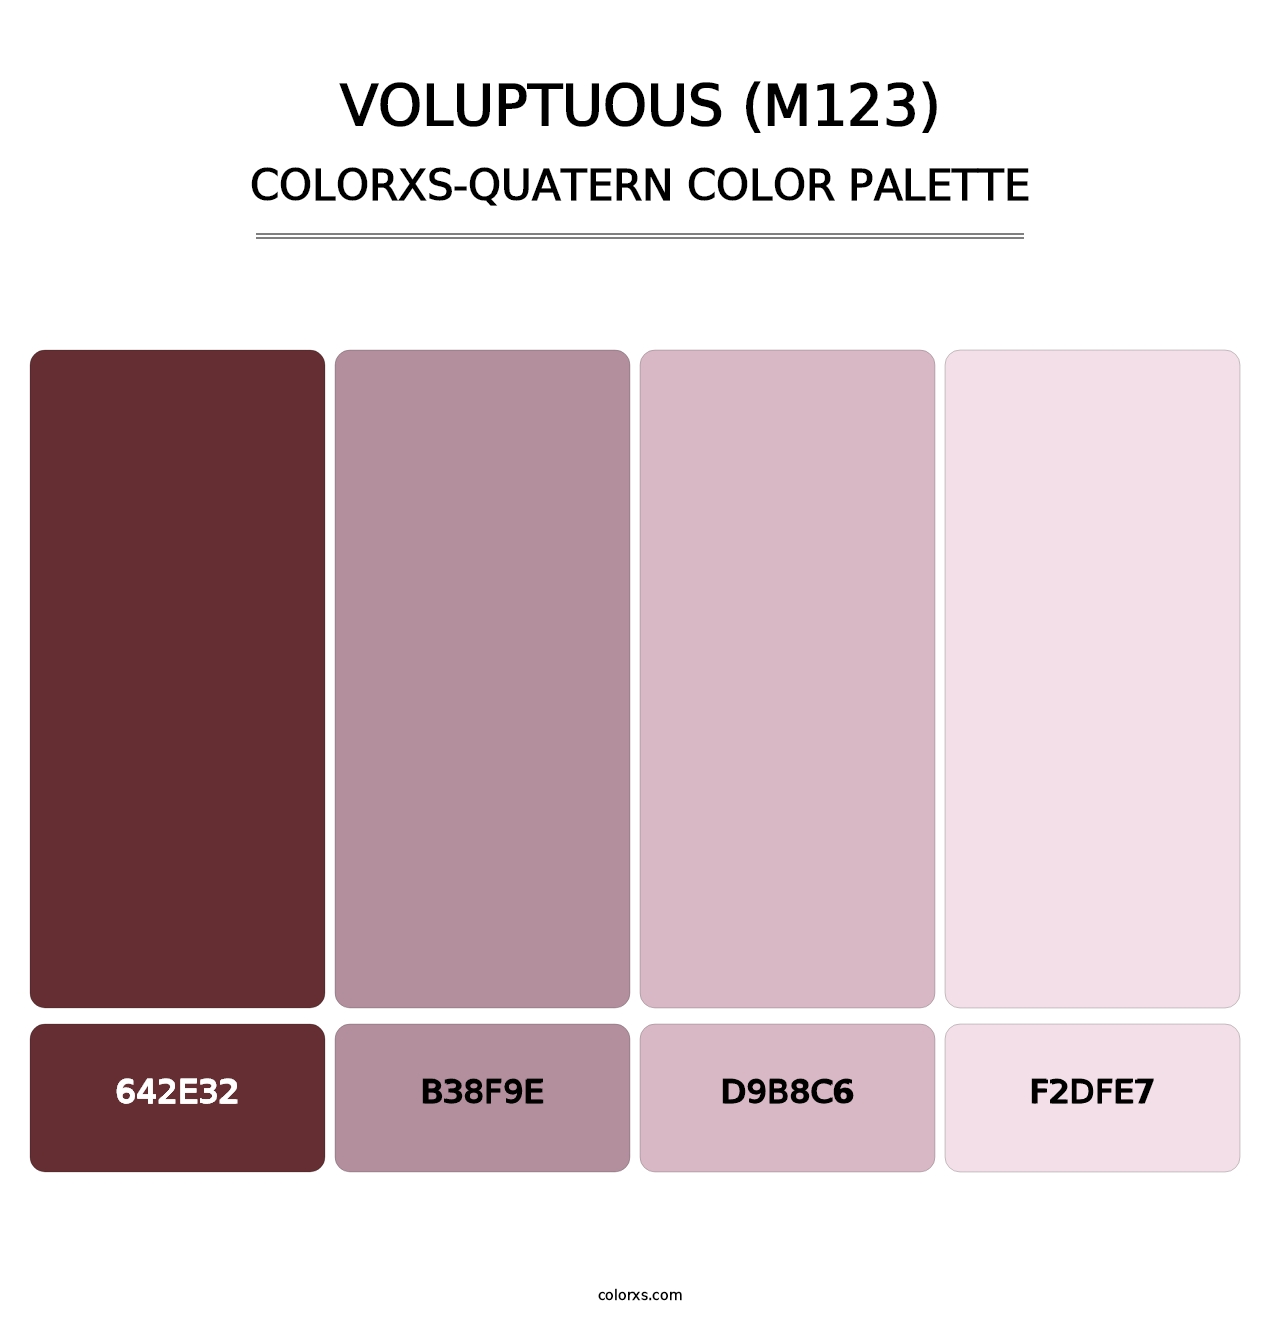 Voluptuous (M123) - Colorxs Quatern Palette